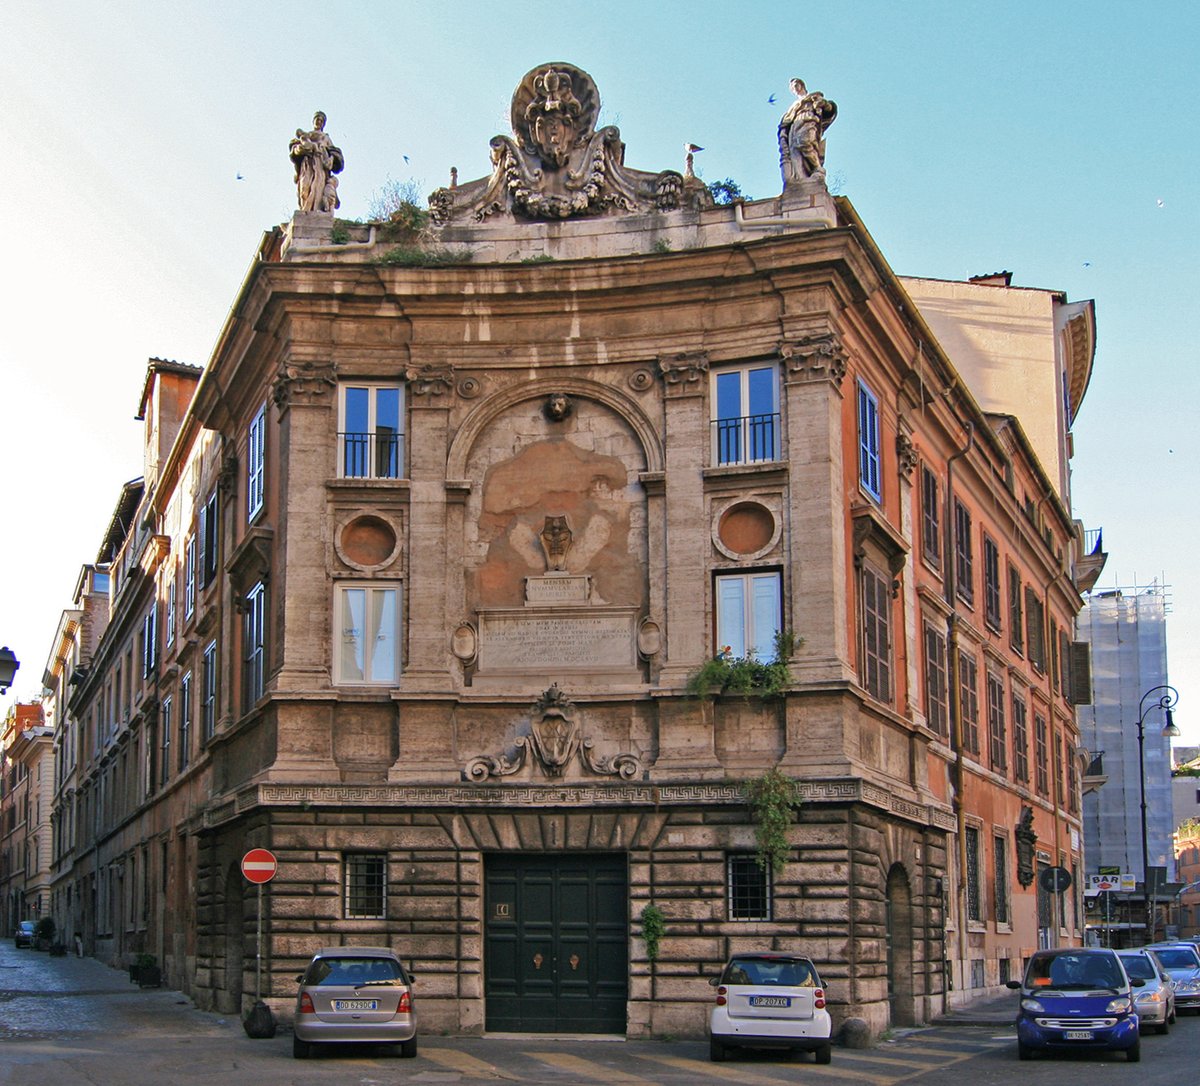 Ce n'est qu'en 1923 qu'elle devient «Banco di Santo Spirito S.p.A.», une société anonyme. À la suite de la crise économique de 1929, l'IRI (Institut de reconstruction industrielle) en prend le contrôle en 1935.